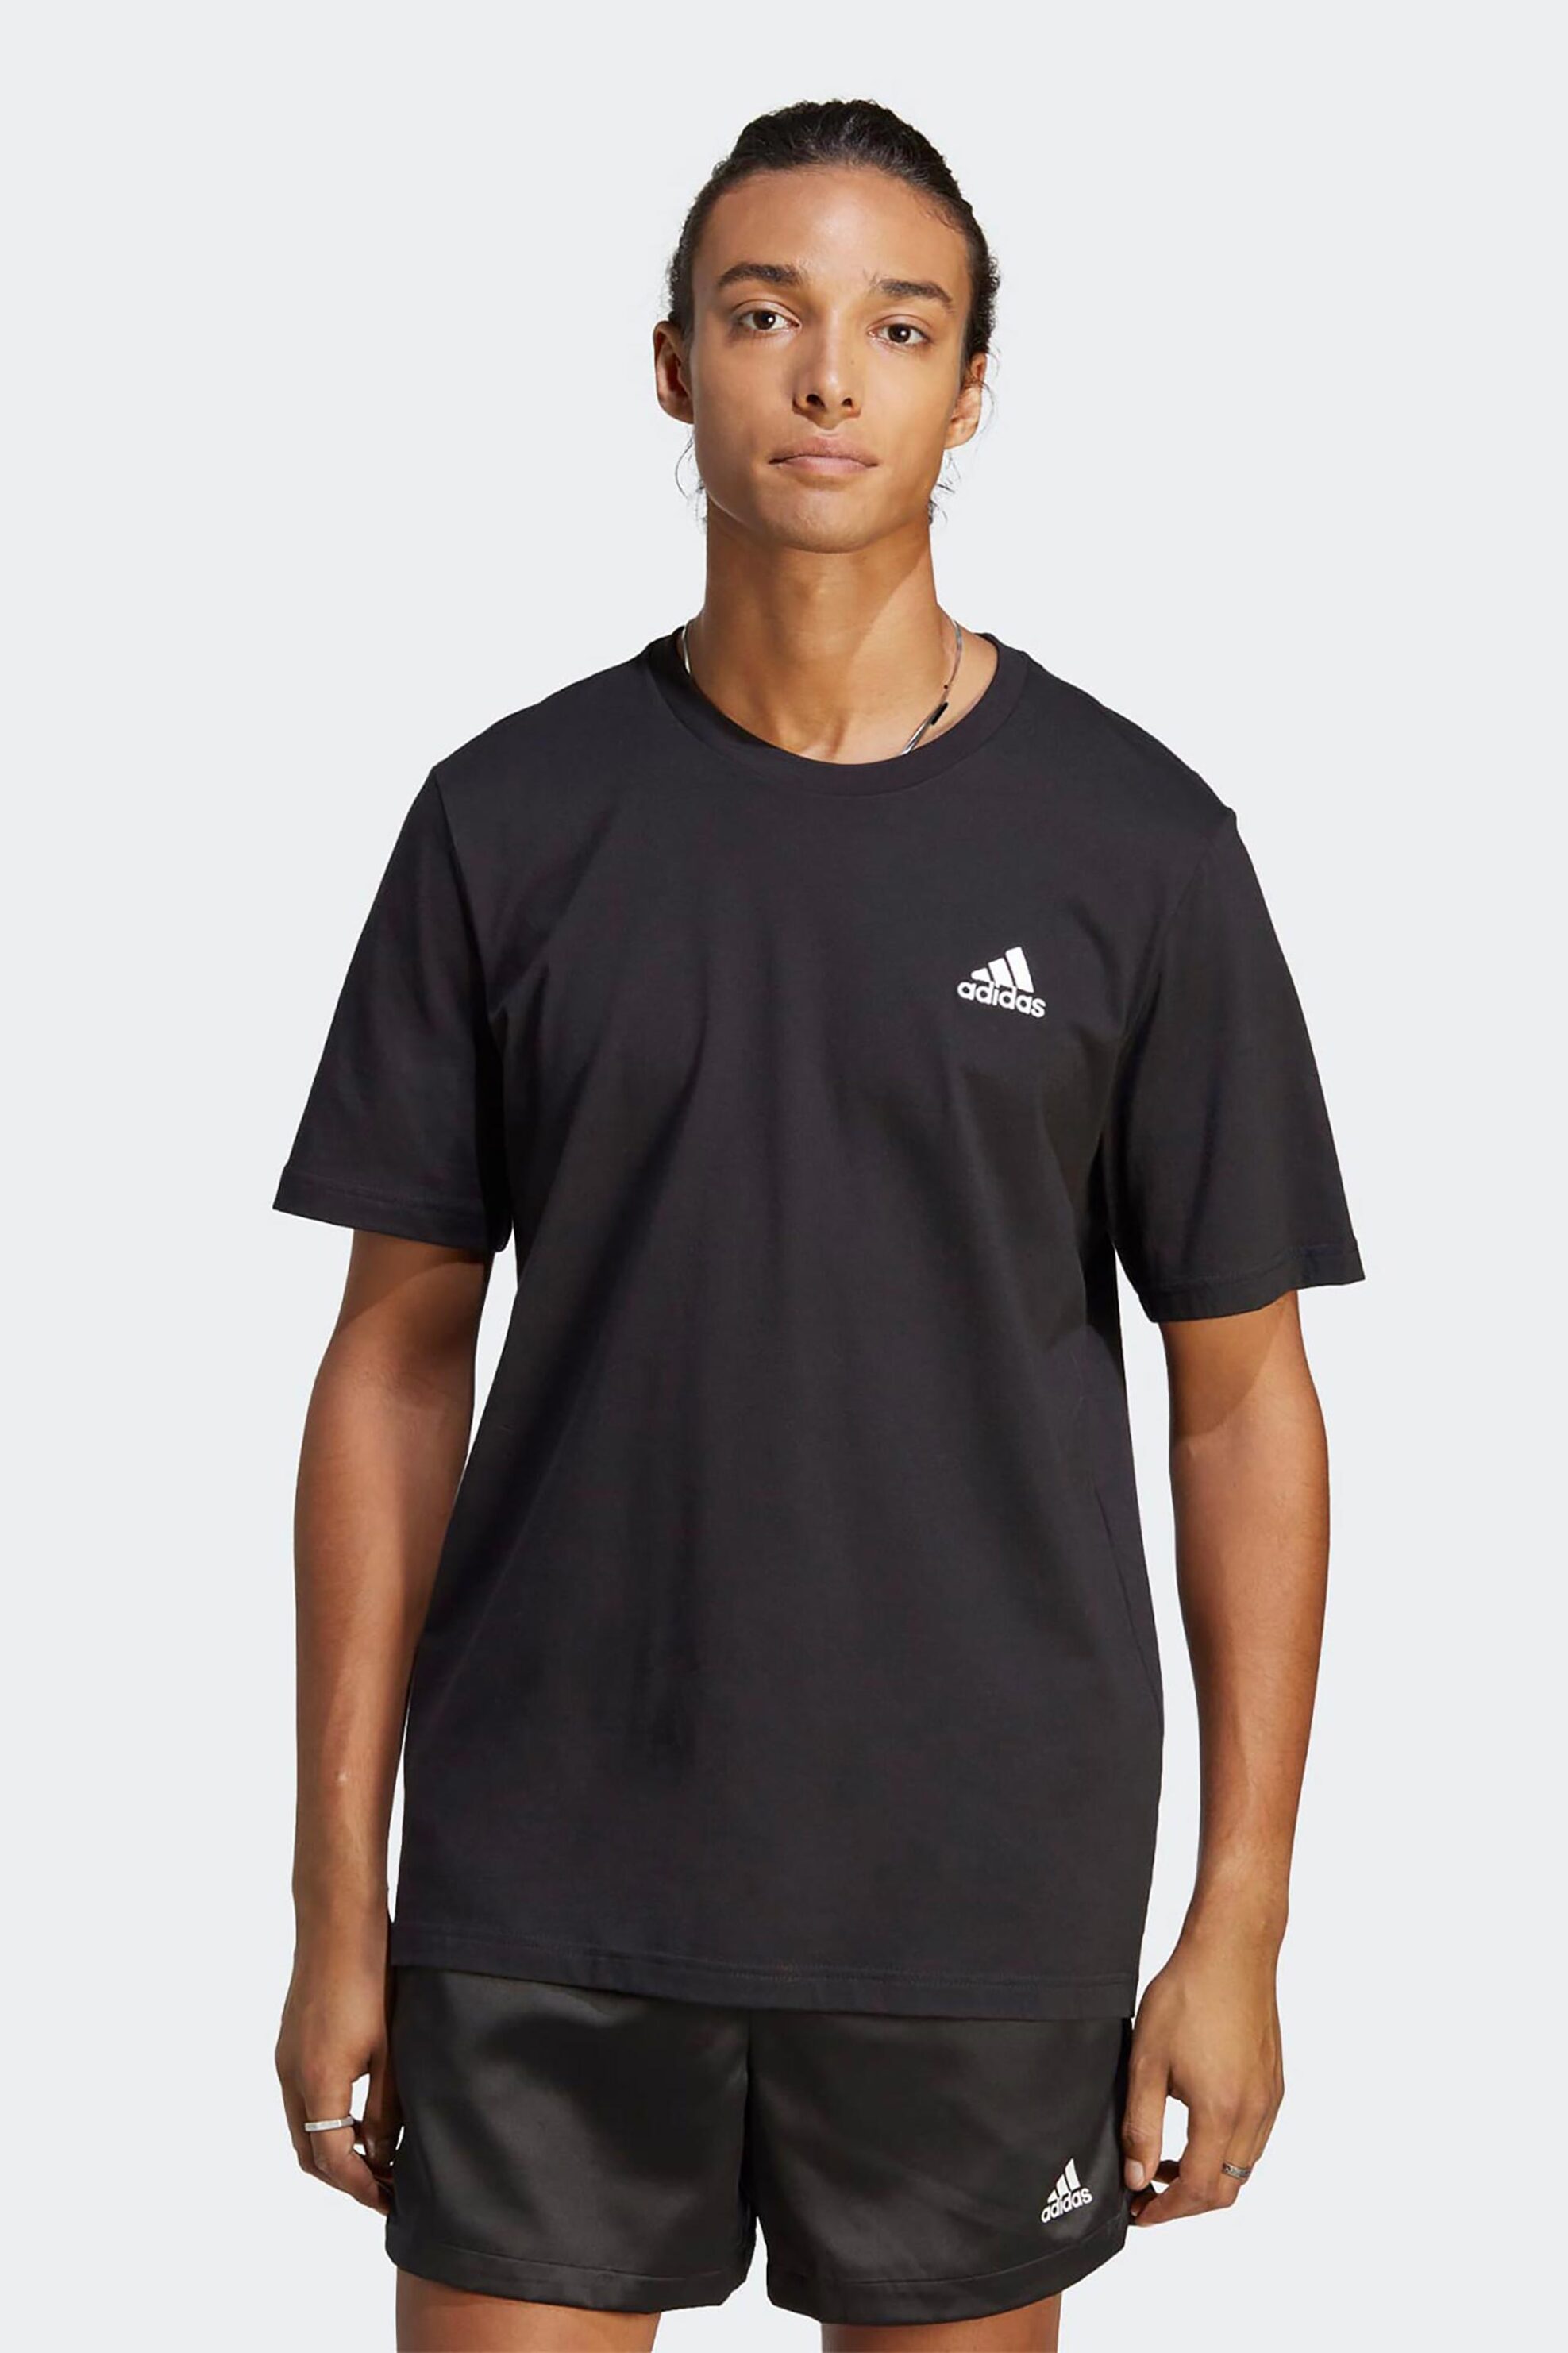 Ανδρική Μόδα > Ανδρικά Αθλητικά > Ανδρικά Αθλητικά Ρούχα > Αθλητικές Μπλούζες > Ανδρικά Αθλητικά T-Shirts Adidas ανδρικό αθλητικό T-shirt μονόχρωμο με contrast κεντημένο λογότυπο "Essentials" - IC9282 Μαύρο